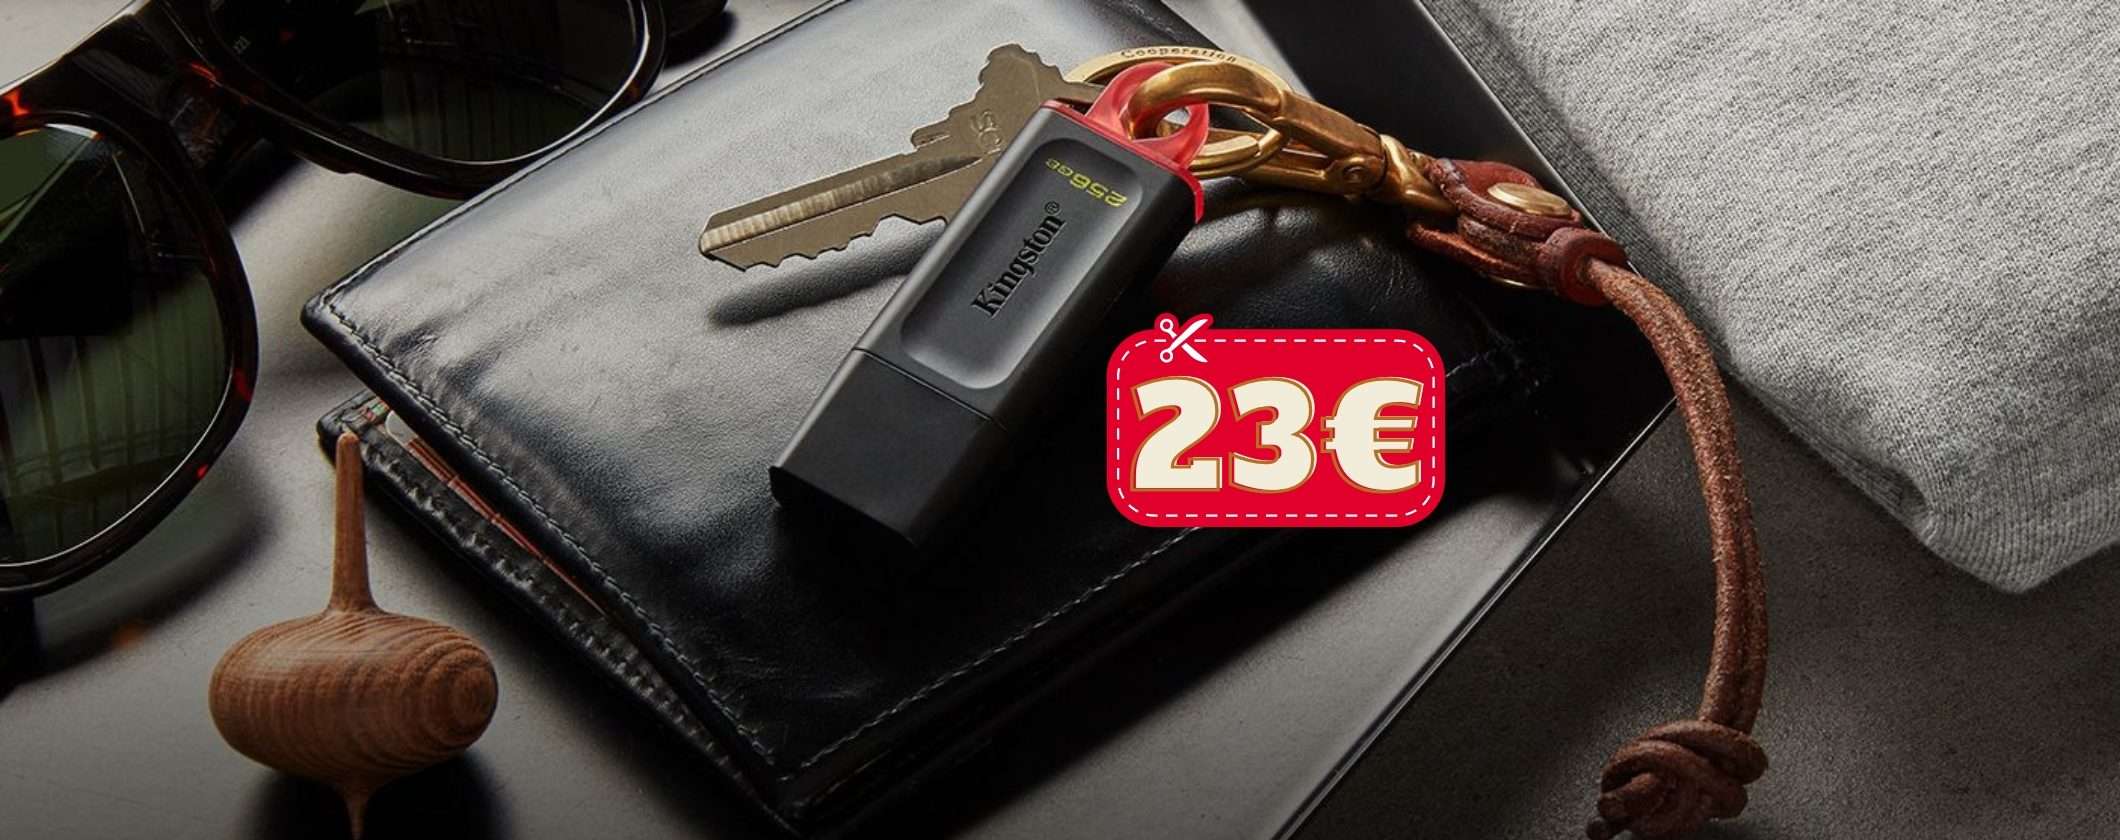 Chiavetta USB 256GB Kingston: solo 23€, Amazon fuori di testa